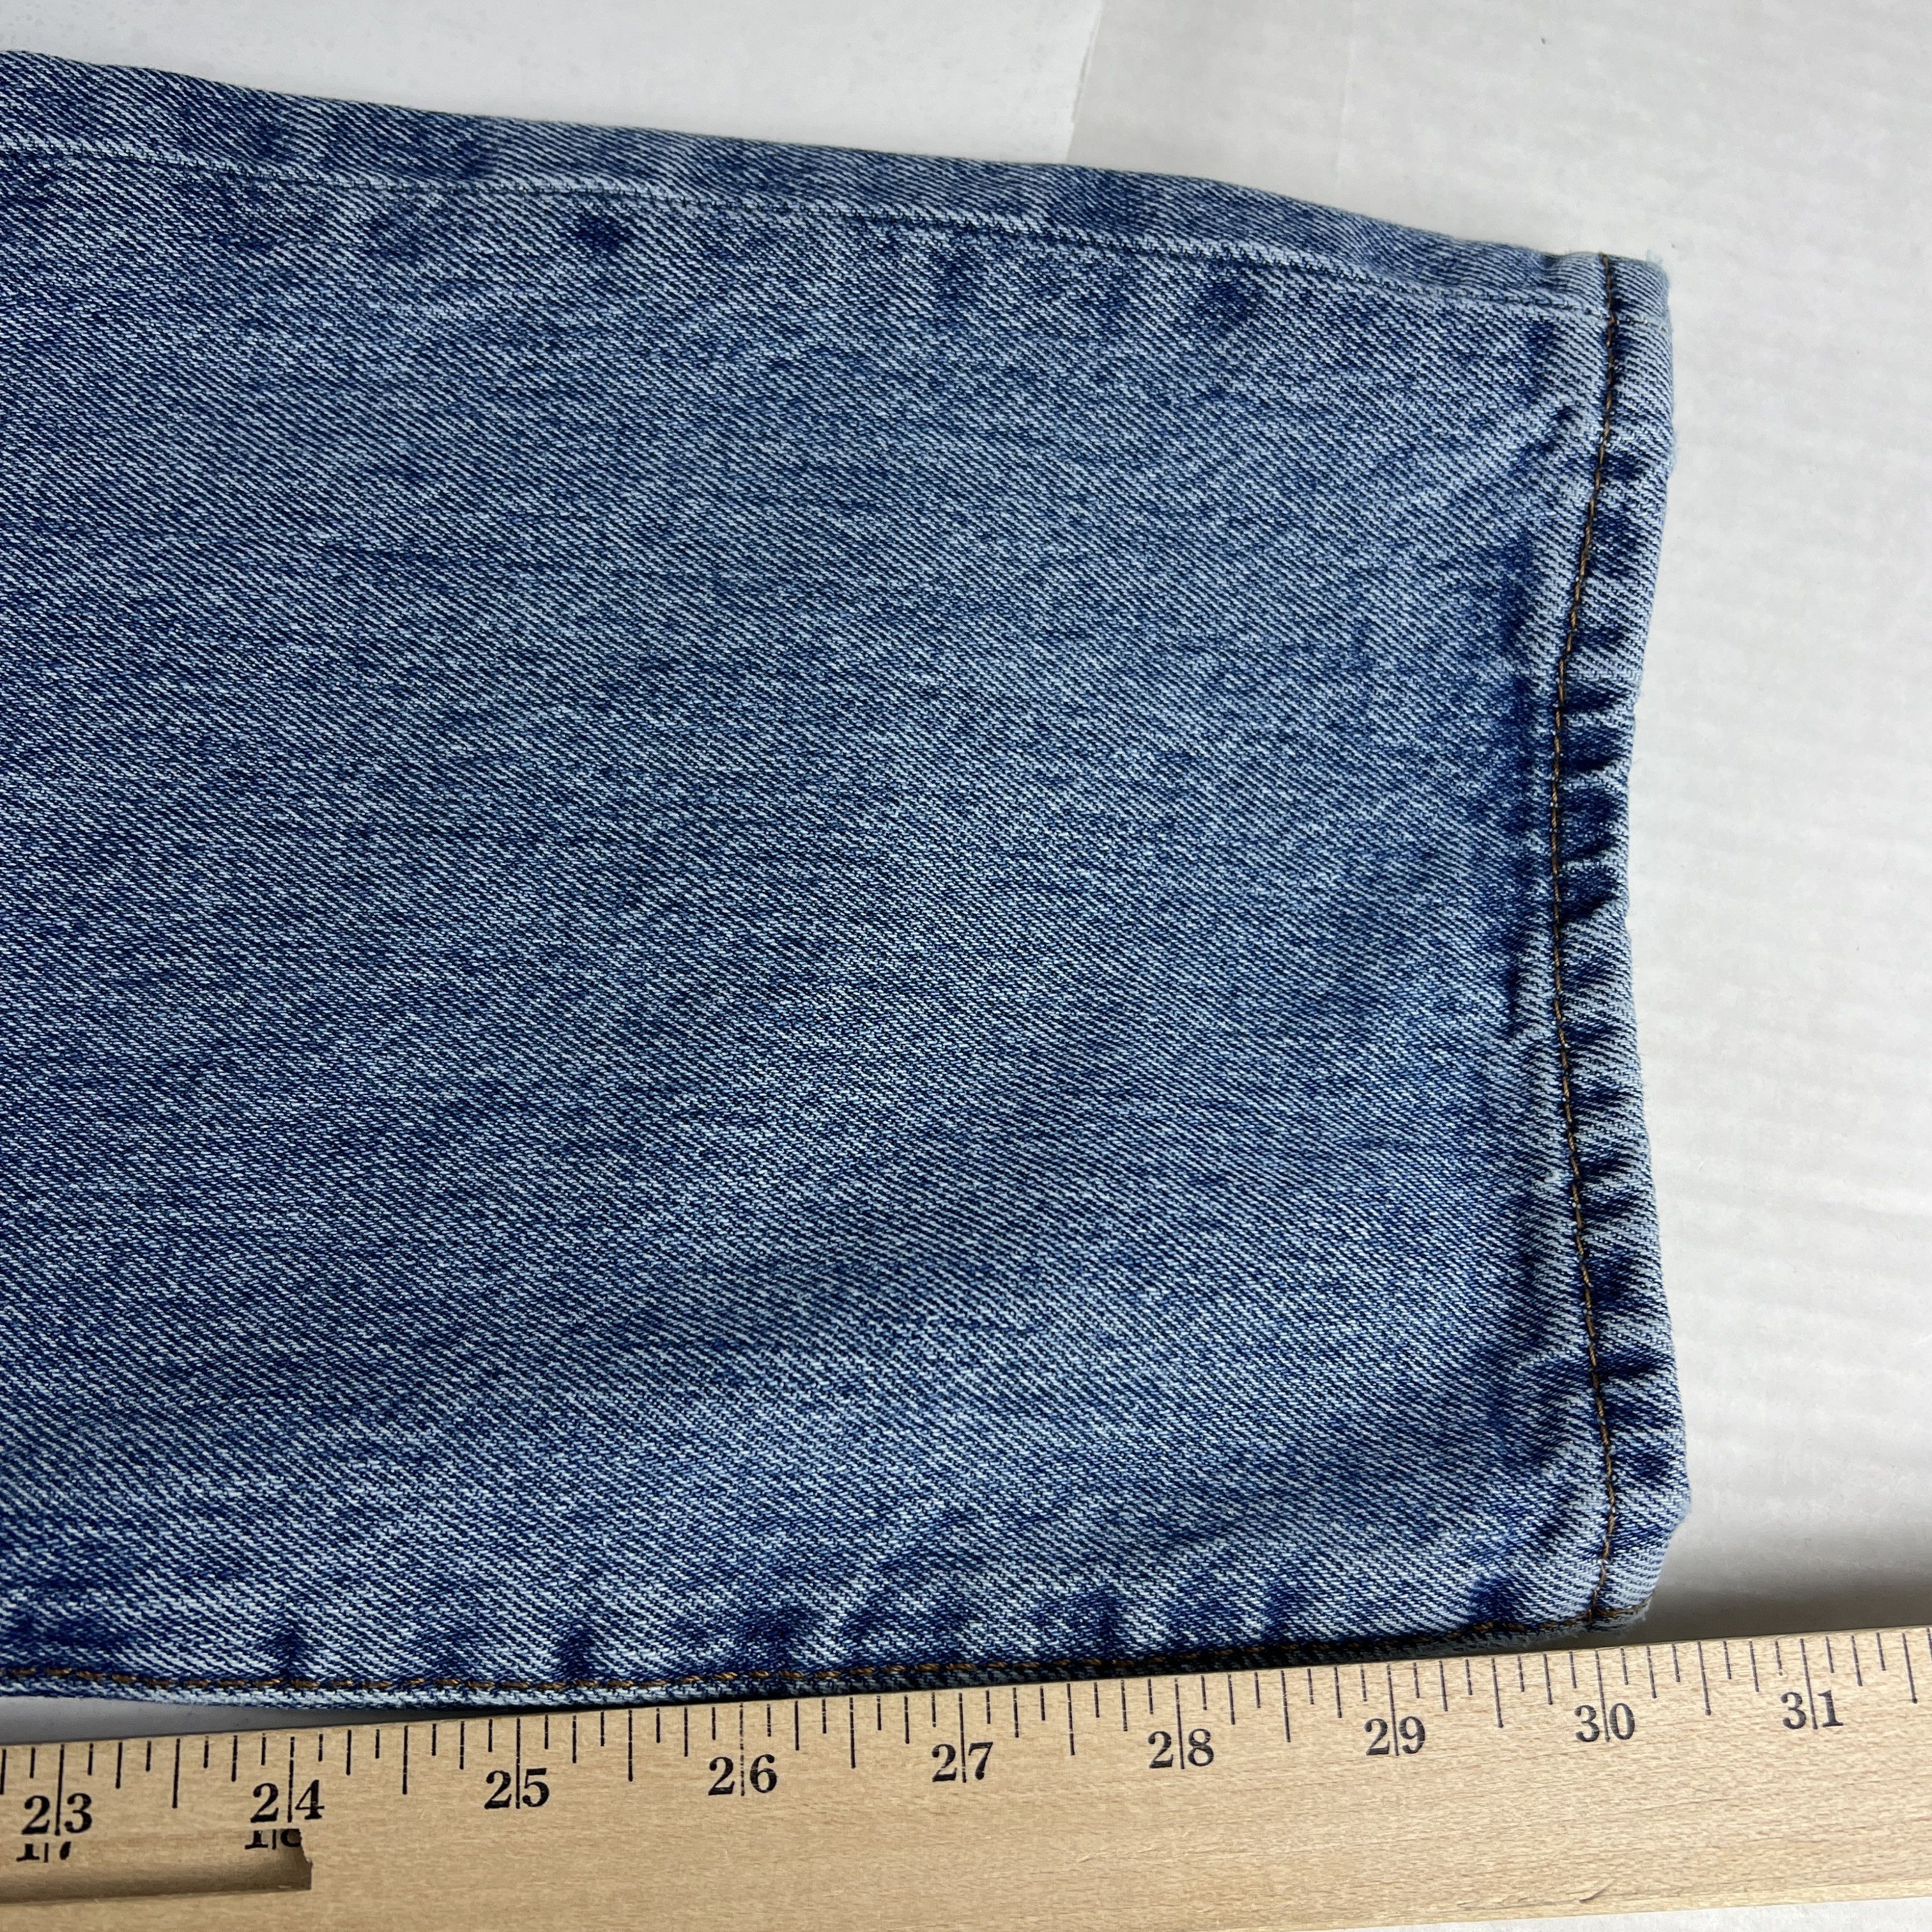 Levi's Levi's Jeans 501 XX Original Straight Blue Cotton Denim Size US 33 - 19 Thumbnail